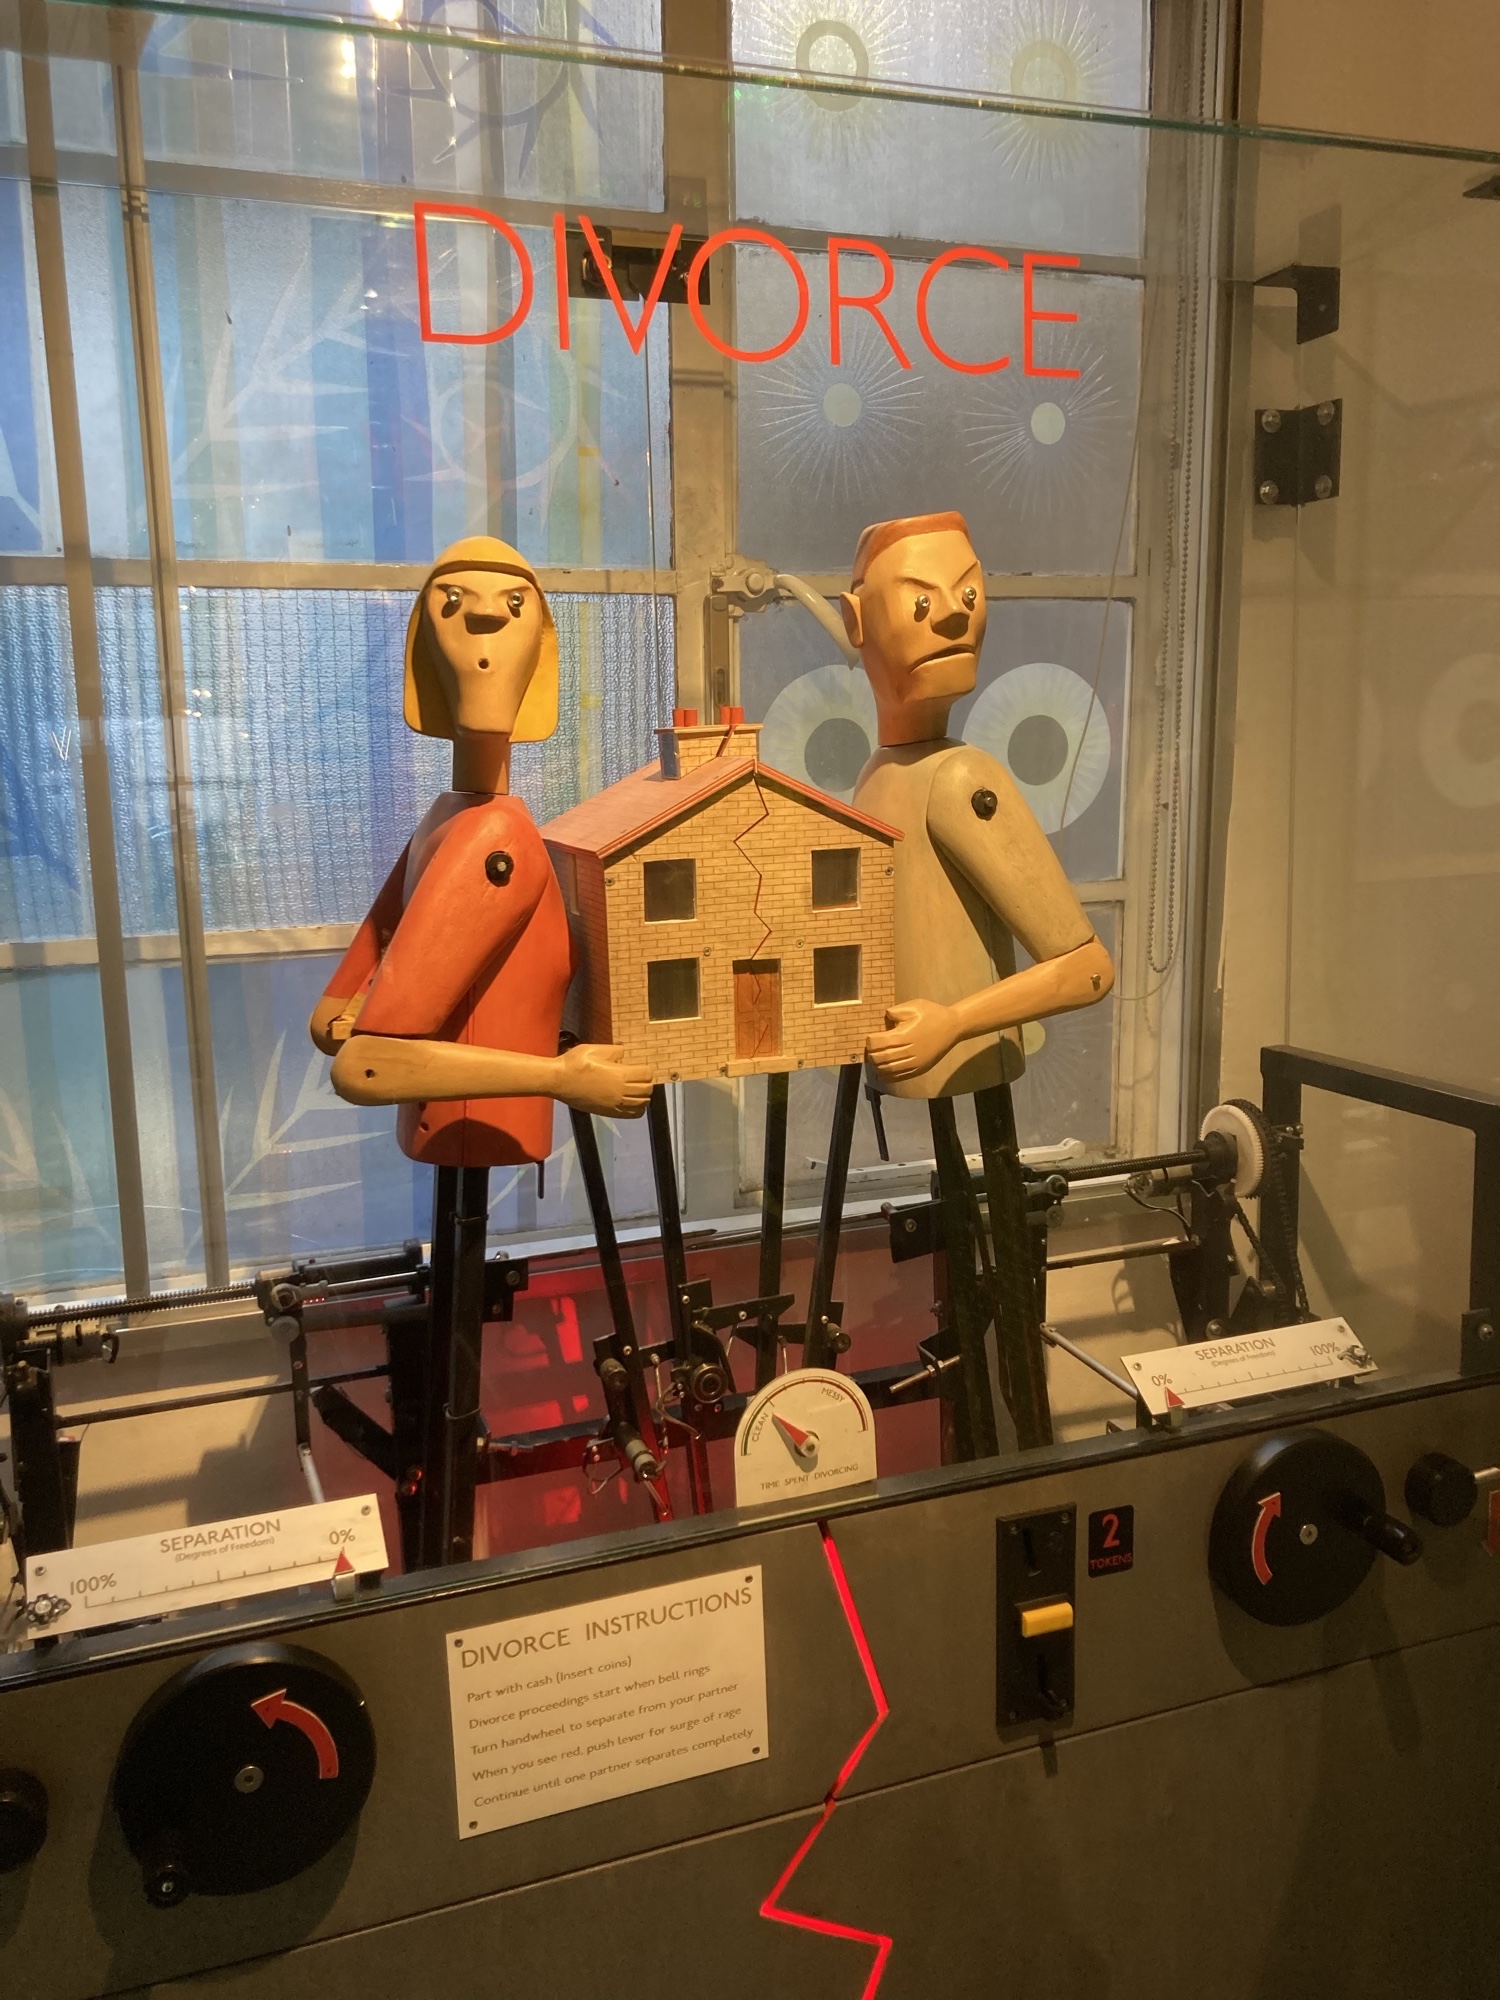 Divorce Automat, in einem Glaskasten befinden sich zwei Puppen, die als männlich und weiblich zu verstehen sind, jede Puppe hält eine Seite eines Hauses, beide haben einen grimmigen Gesichtsausdruck, außen am Kasten befinden sich zwei Kurbeln, an denen gedreht werden muss, um den Automaten zu bedienen